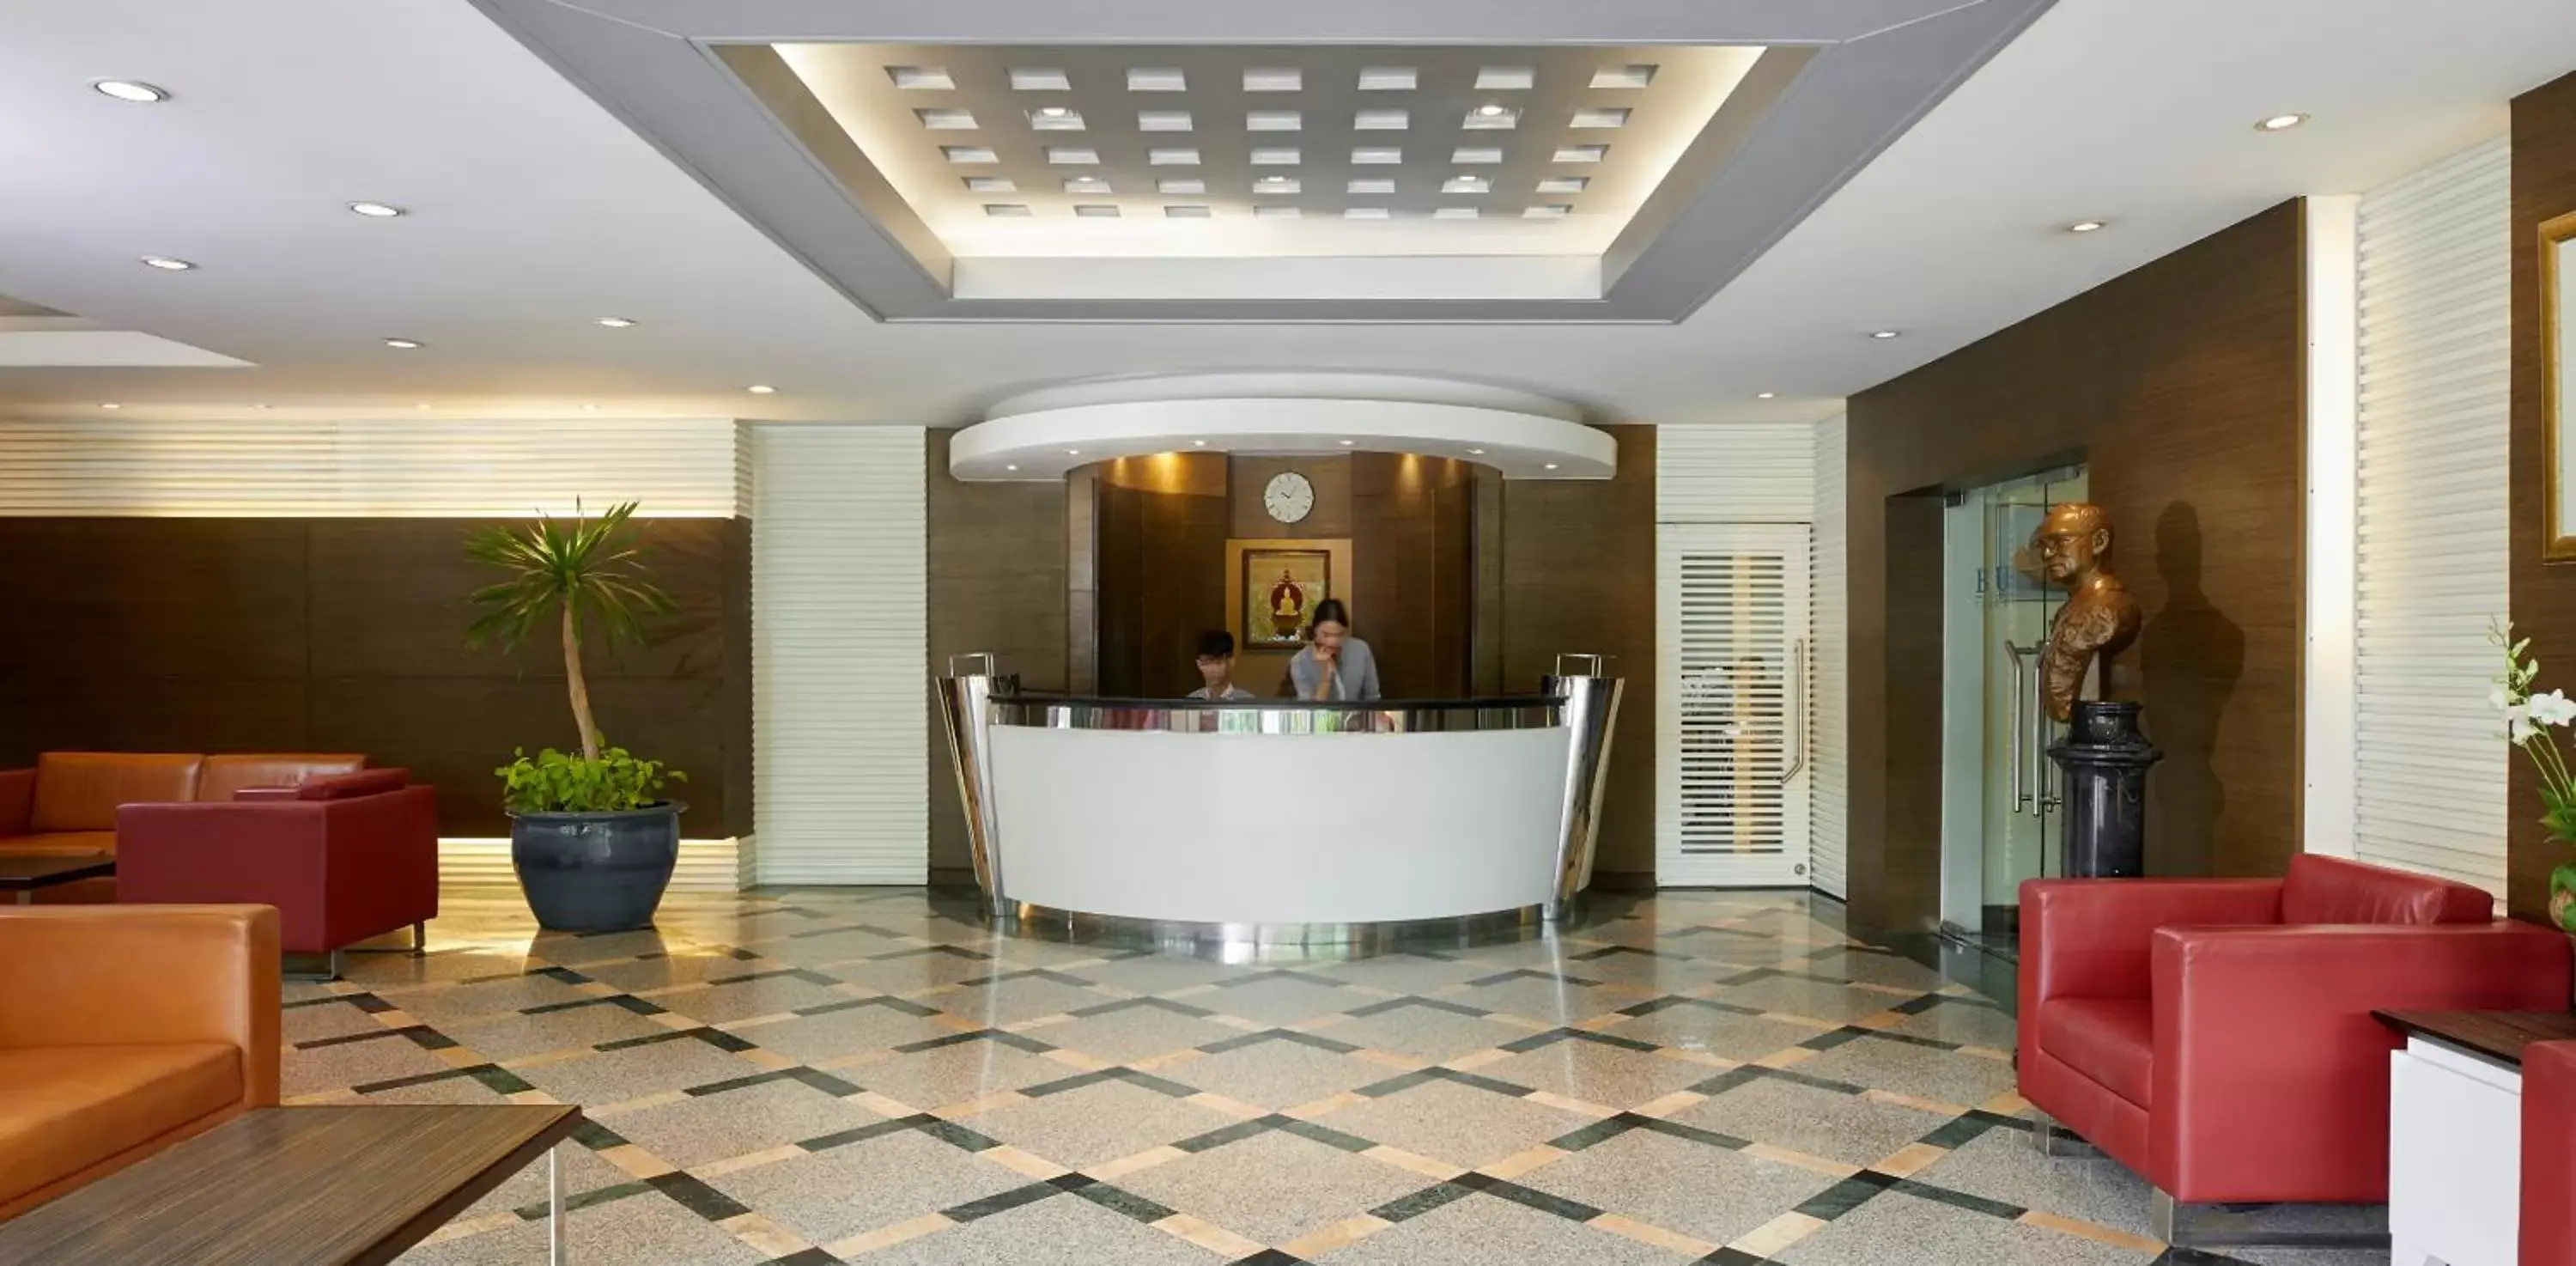 Lobby or reception, Lobby/Reception in BU Place Hotel